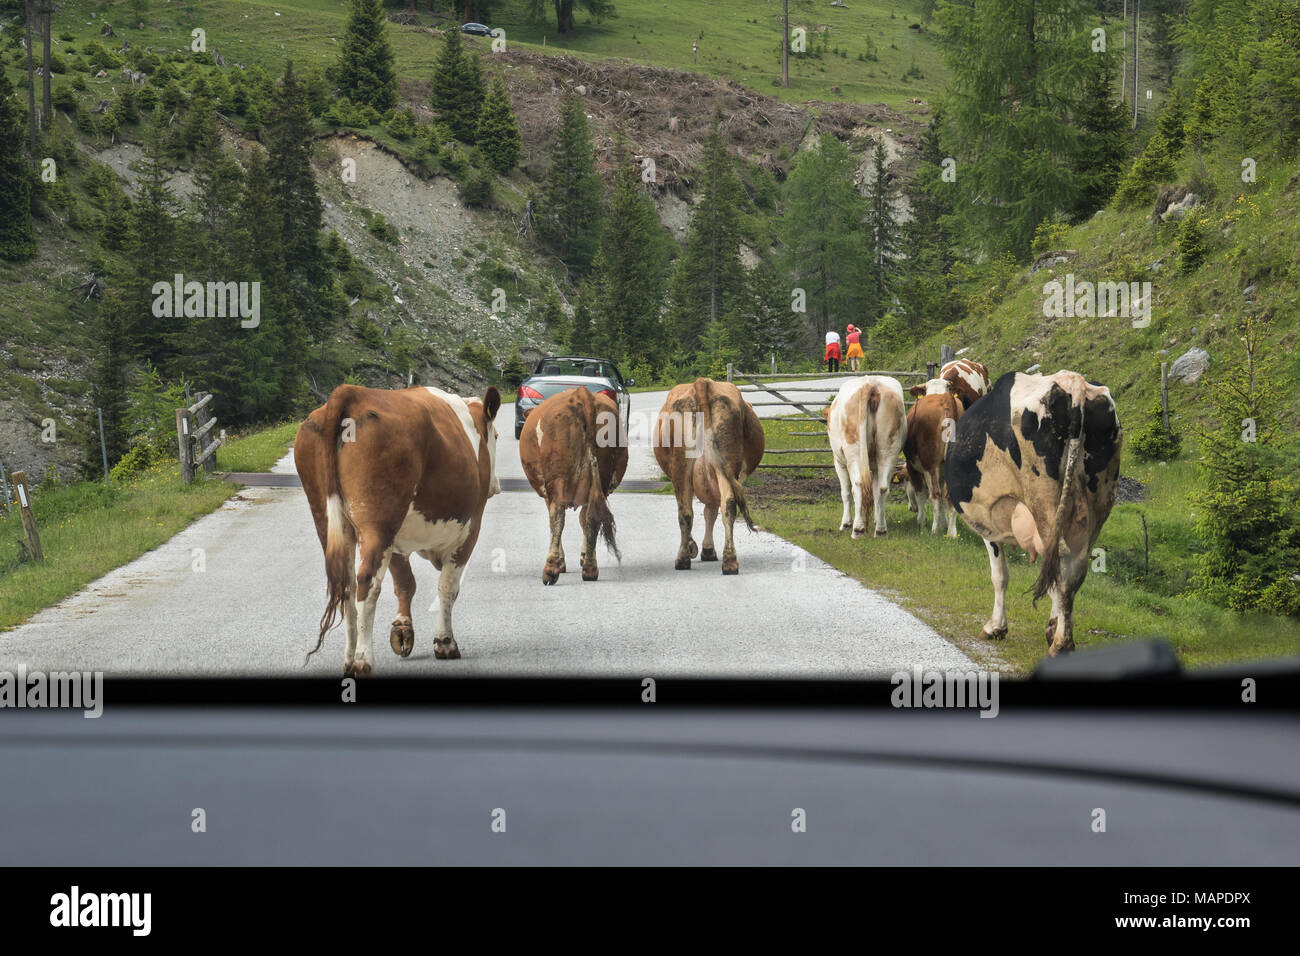 Groupe de vaches au milieu d'une route de campagne, vue de l'avant pare-brise de voiture Banque D'Images